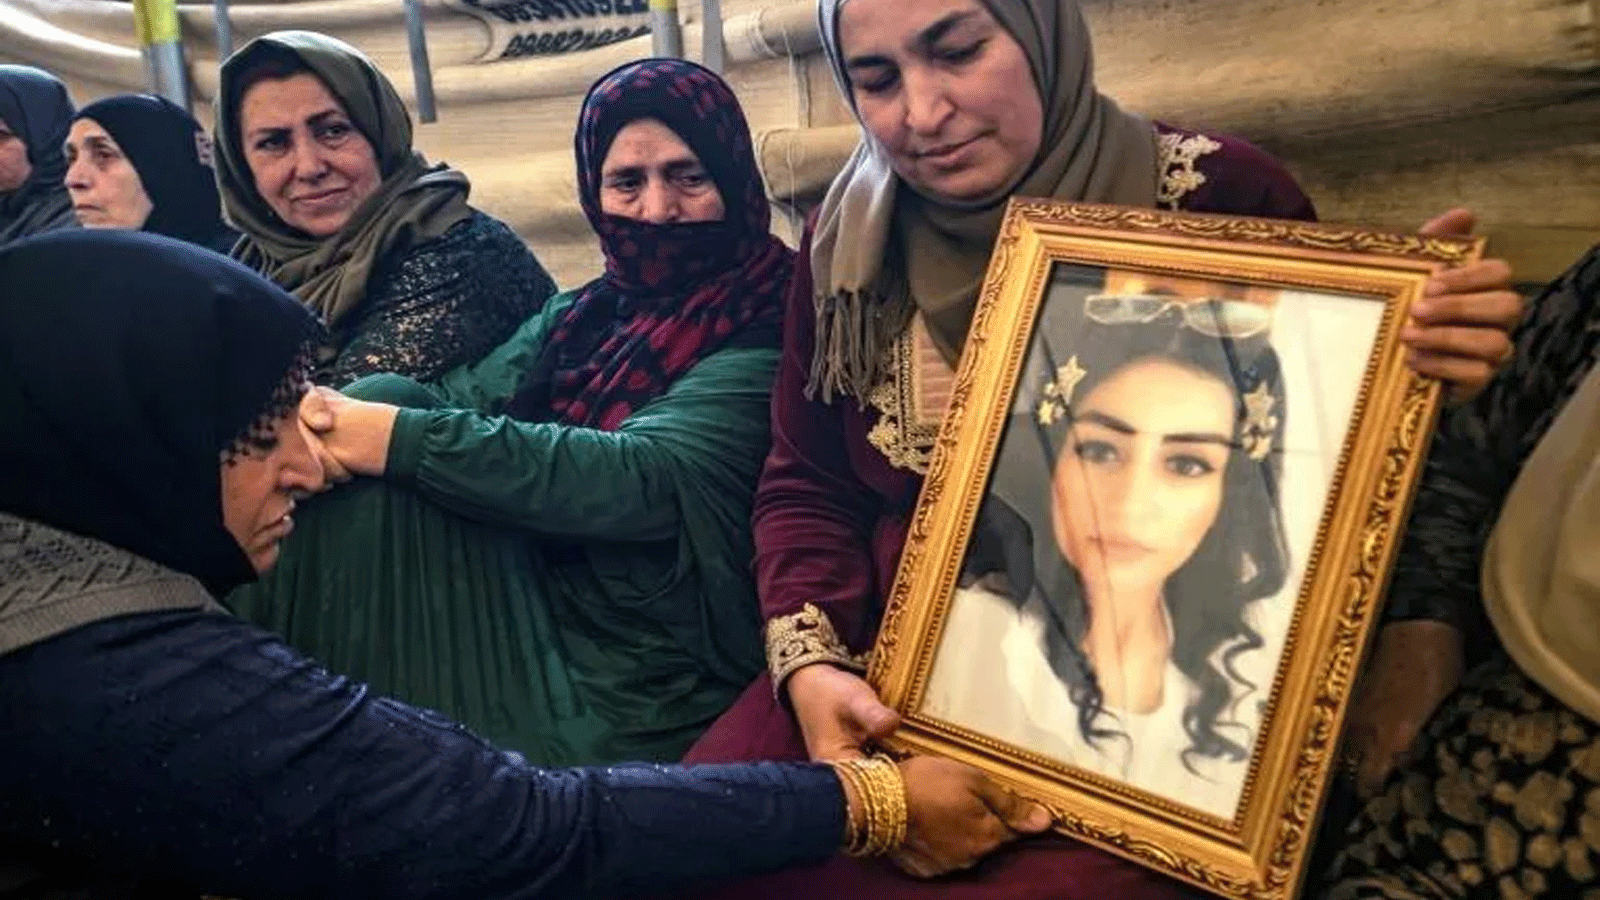  هيام سعدون تحمل صورة ابنتها إيناس عبد السلام البالغة من العمر 23 عامًا والمذكورة في عداد المفقودين مع صديقتها جيندة سعيد، 27 عامًا، بعد محاولتهما الوصول إلى أوروبا.